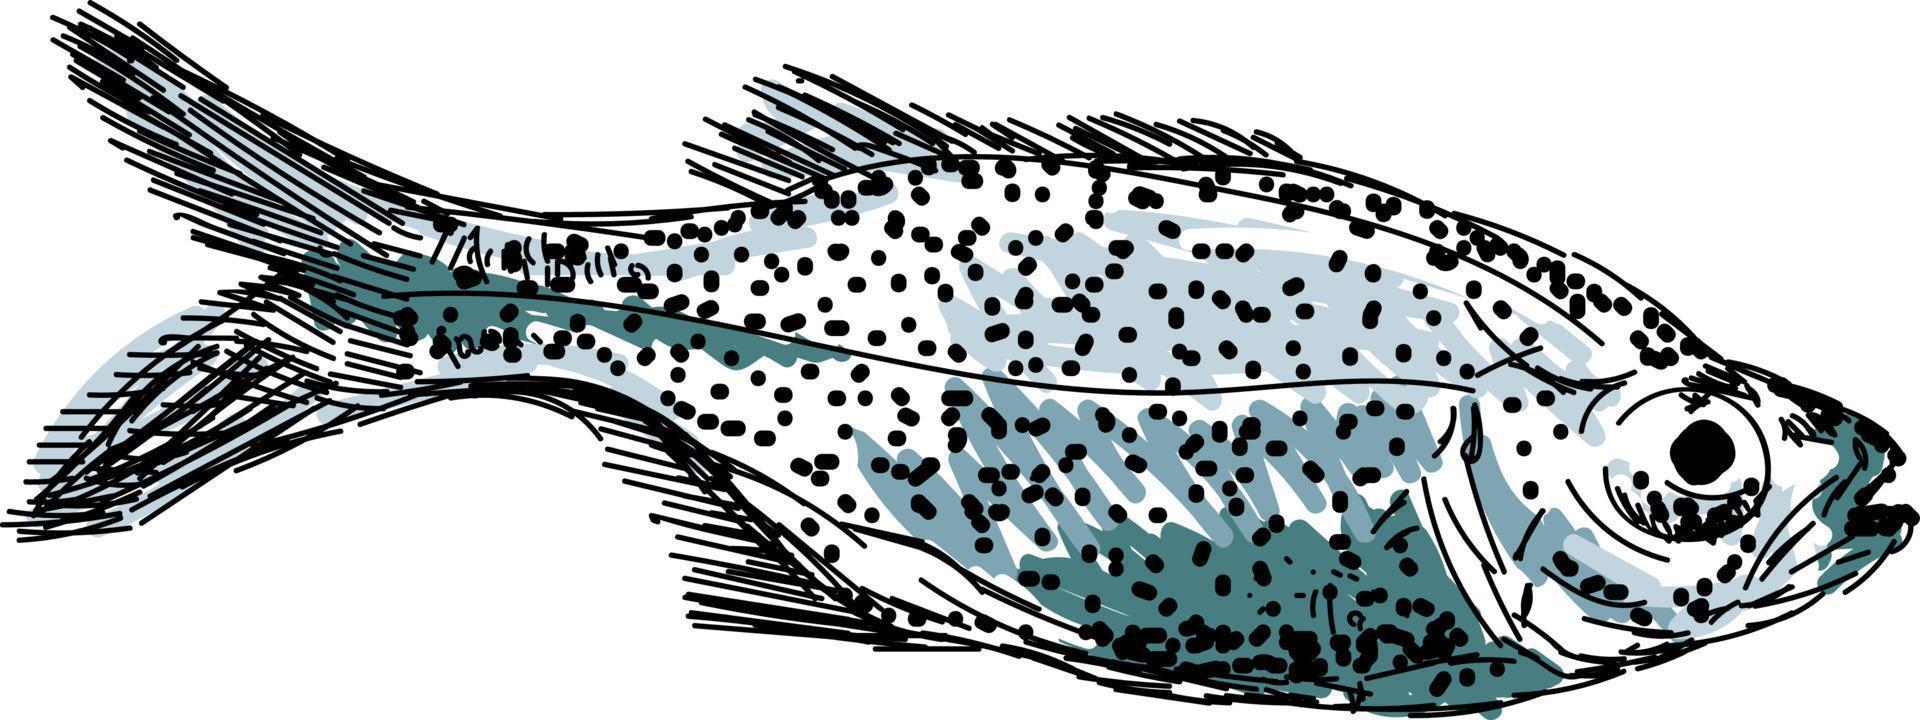 Aholehole fish, illustration, vector on white background.